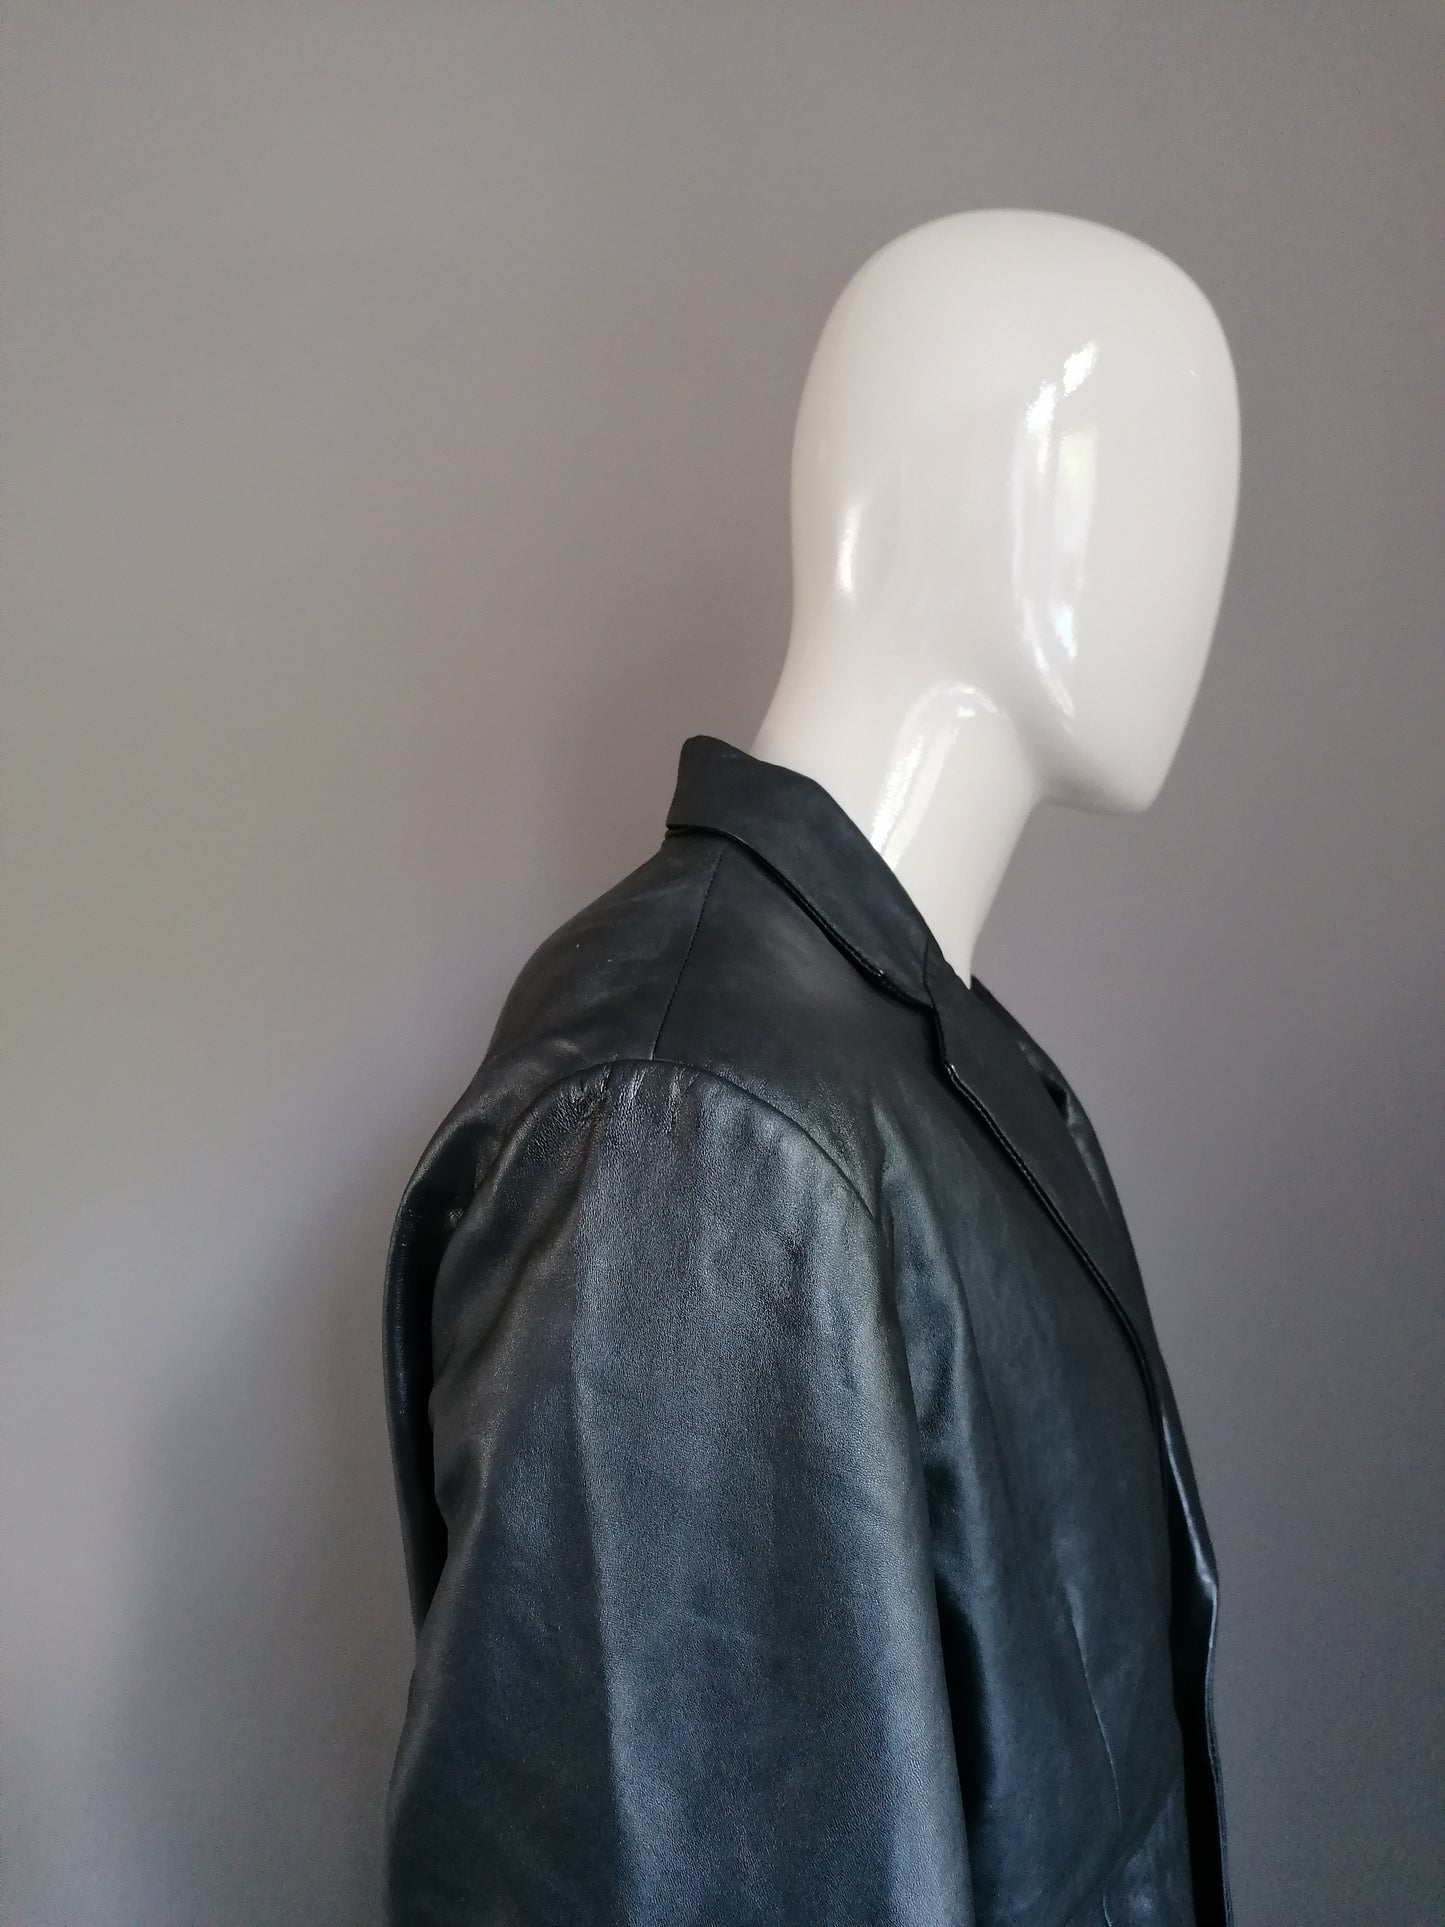 Kit chaqueta de cuero / chaqueta. Negro de color. Talla L.